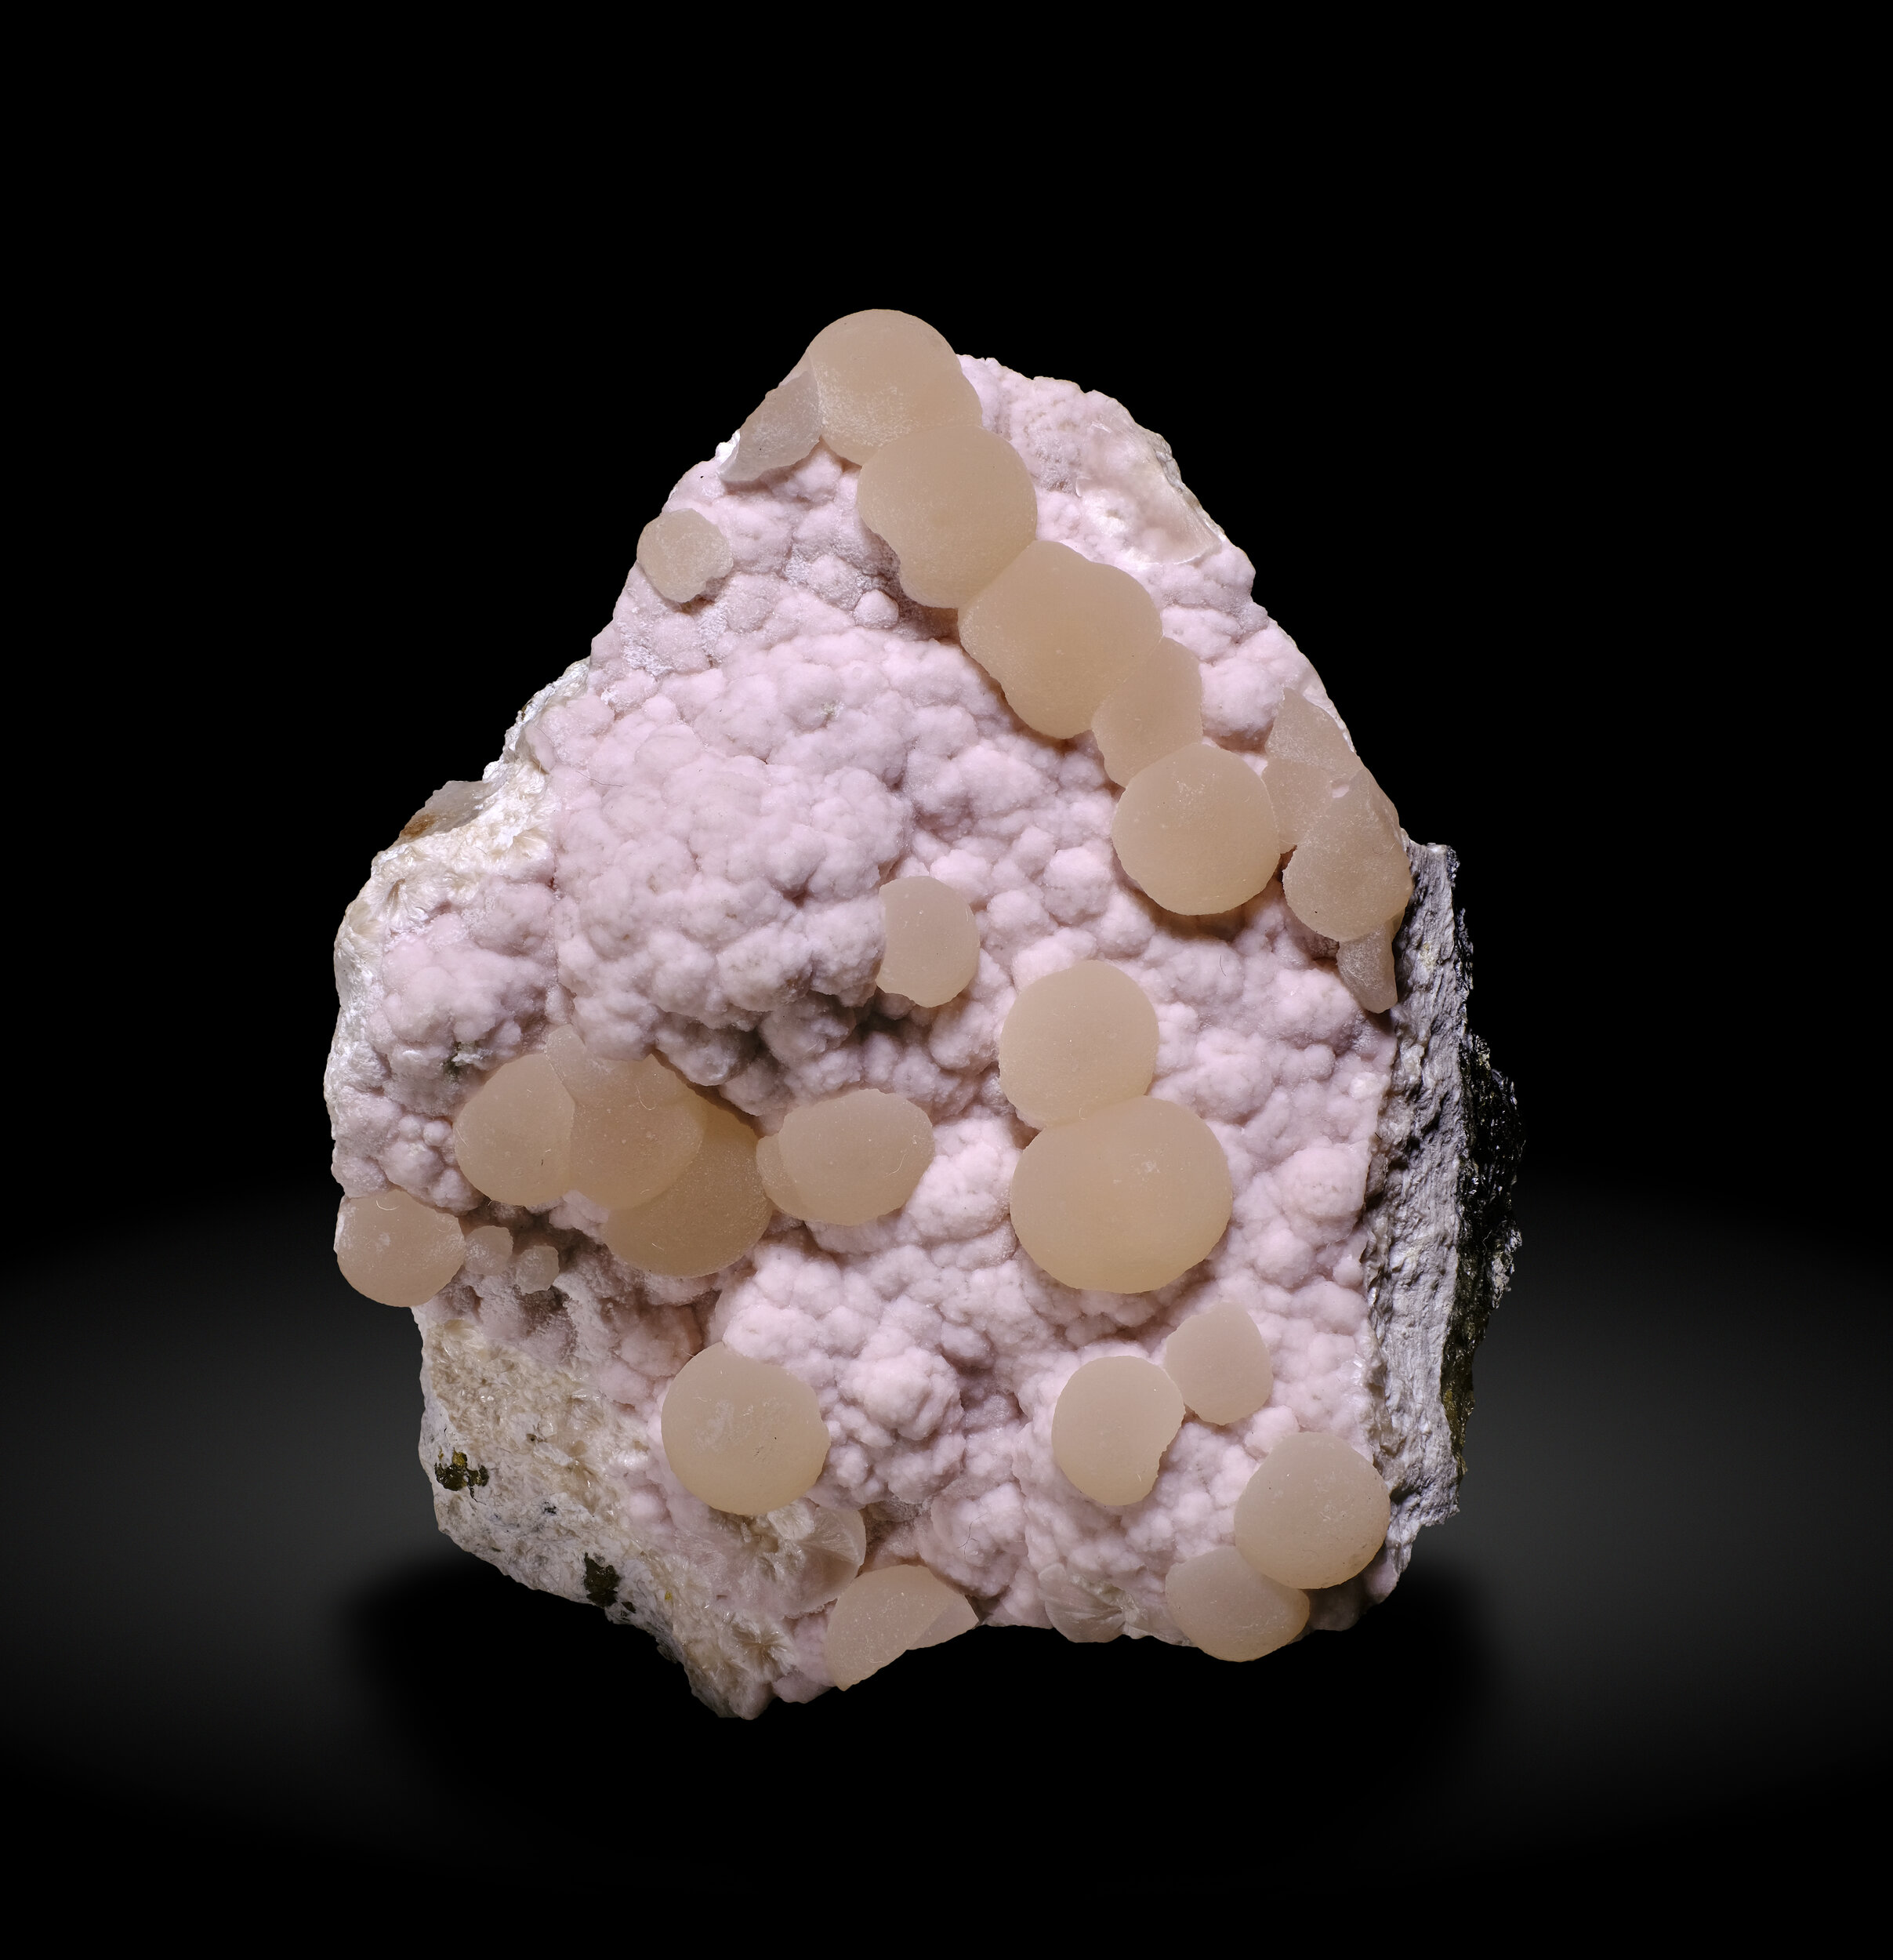 specimens/s_imagesAO2/Bultfonteinite-MAM90AO2_6040_f.jpg